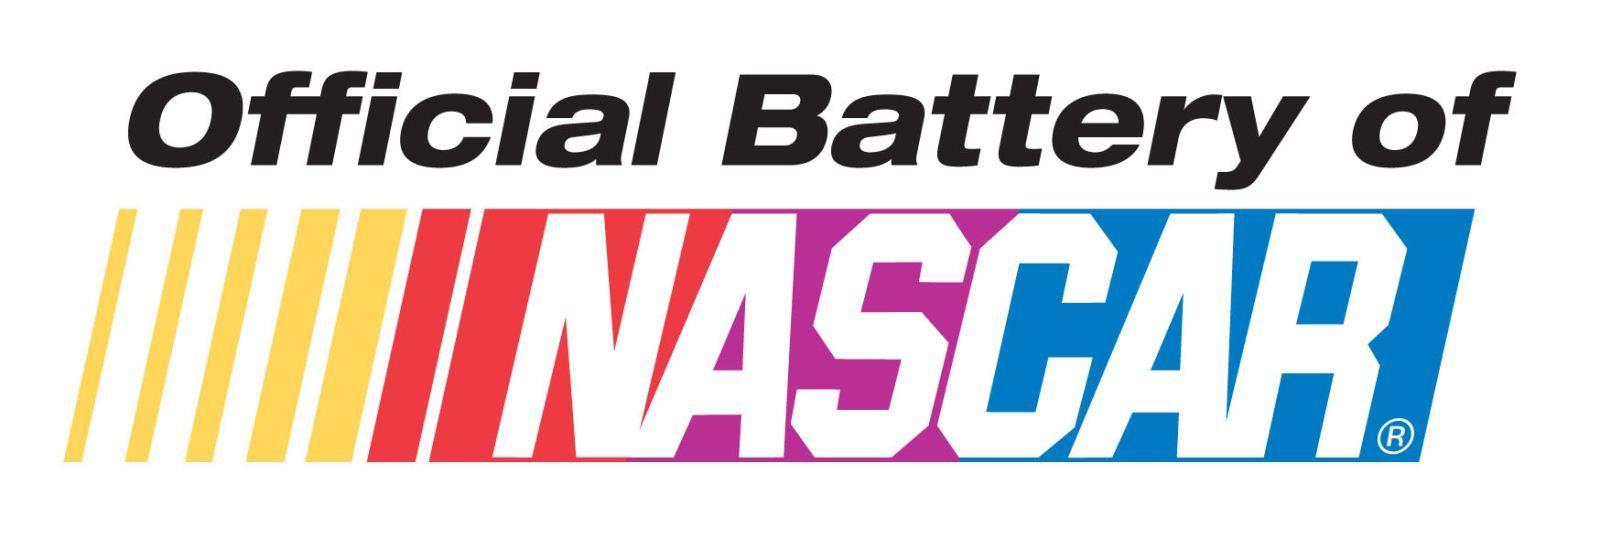 Official NASCAR Sponsors Logo - Race Car Sponsorships